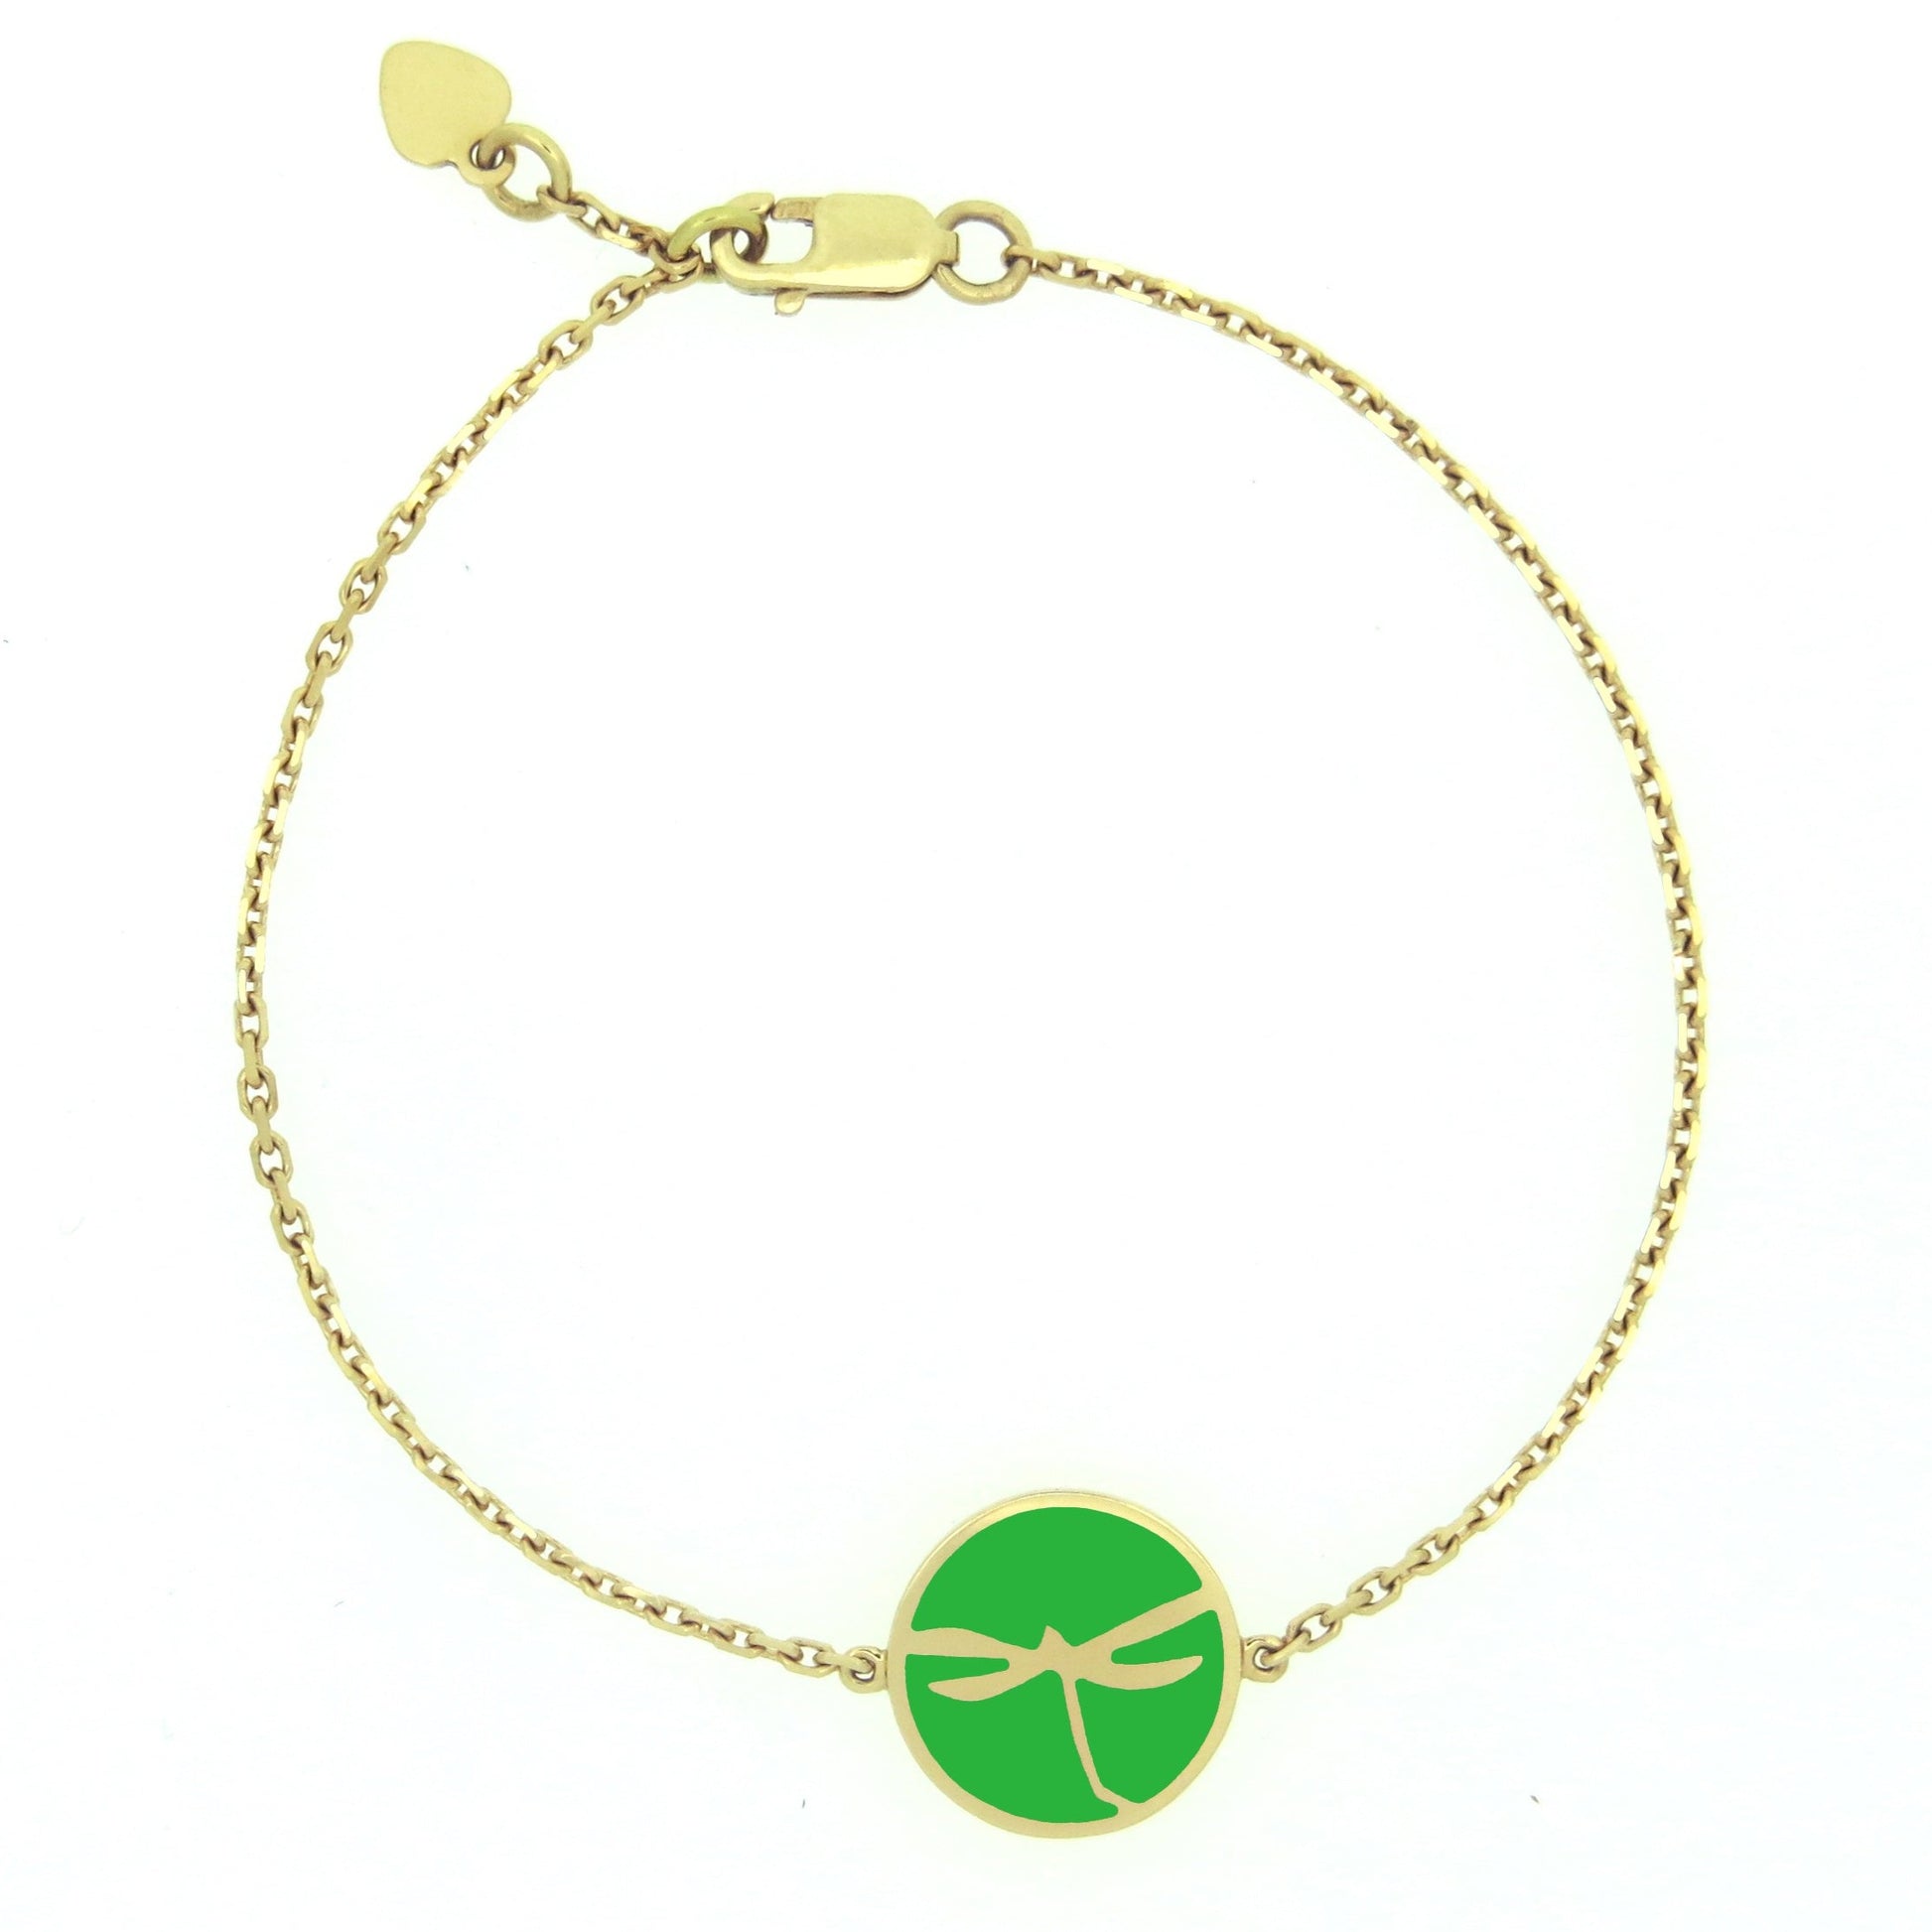  MORA bijoux, bracelet avec médaillon représentant une libellule en or jaune 18 carats dans un médaillon rond émaillé vert monté sur chaîne forçat